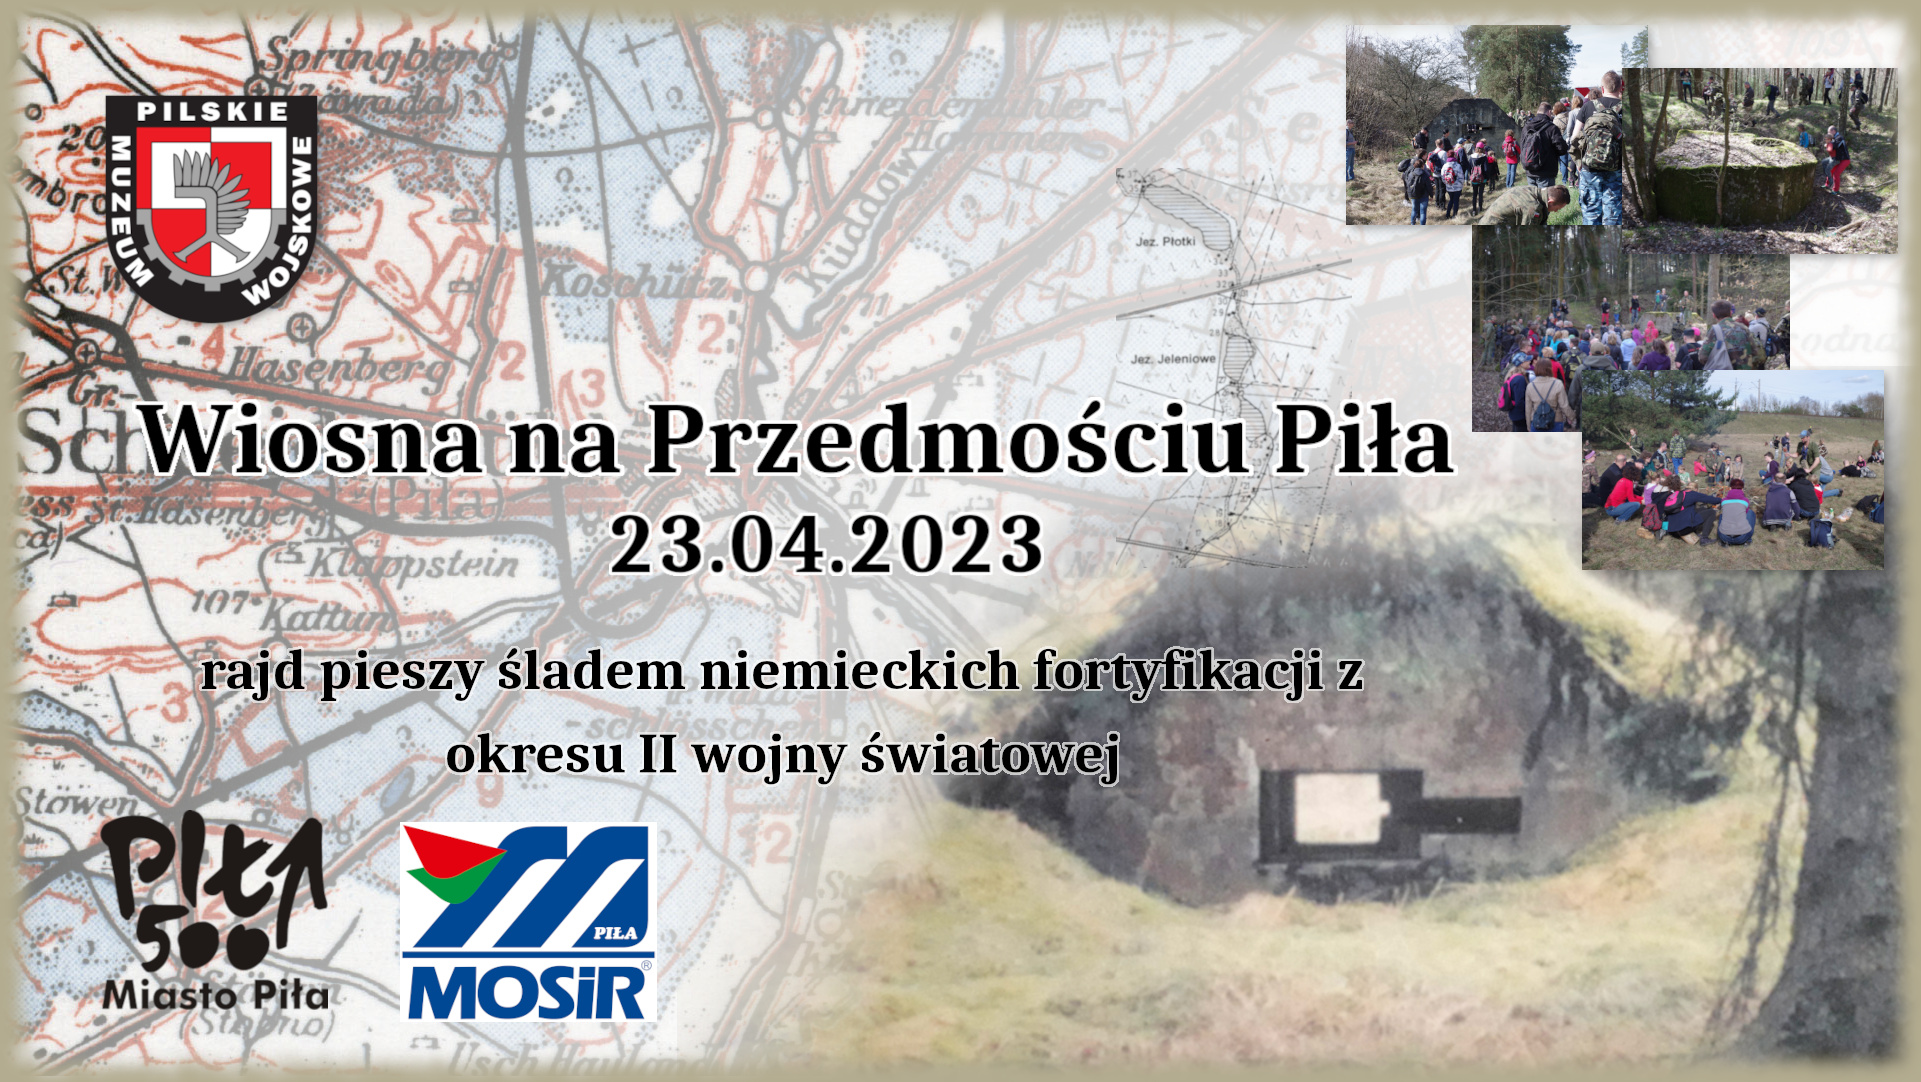 po prawej zdjęcia z poprzednich wydarzeń na lotnisku, napis: Wiosna na przedmościu Piła -  rajd pieszy śladami fortyfikacji z okresu II wojny światowej, logotypy